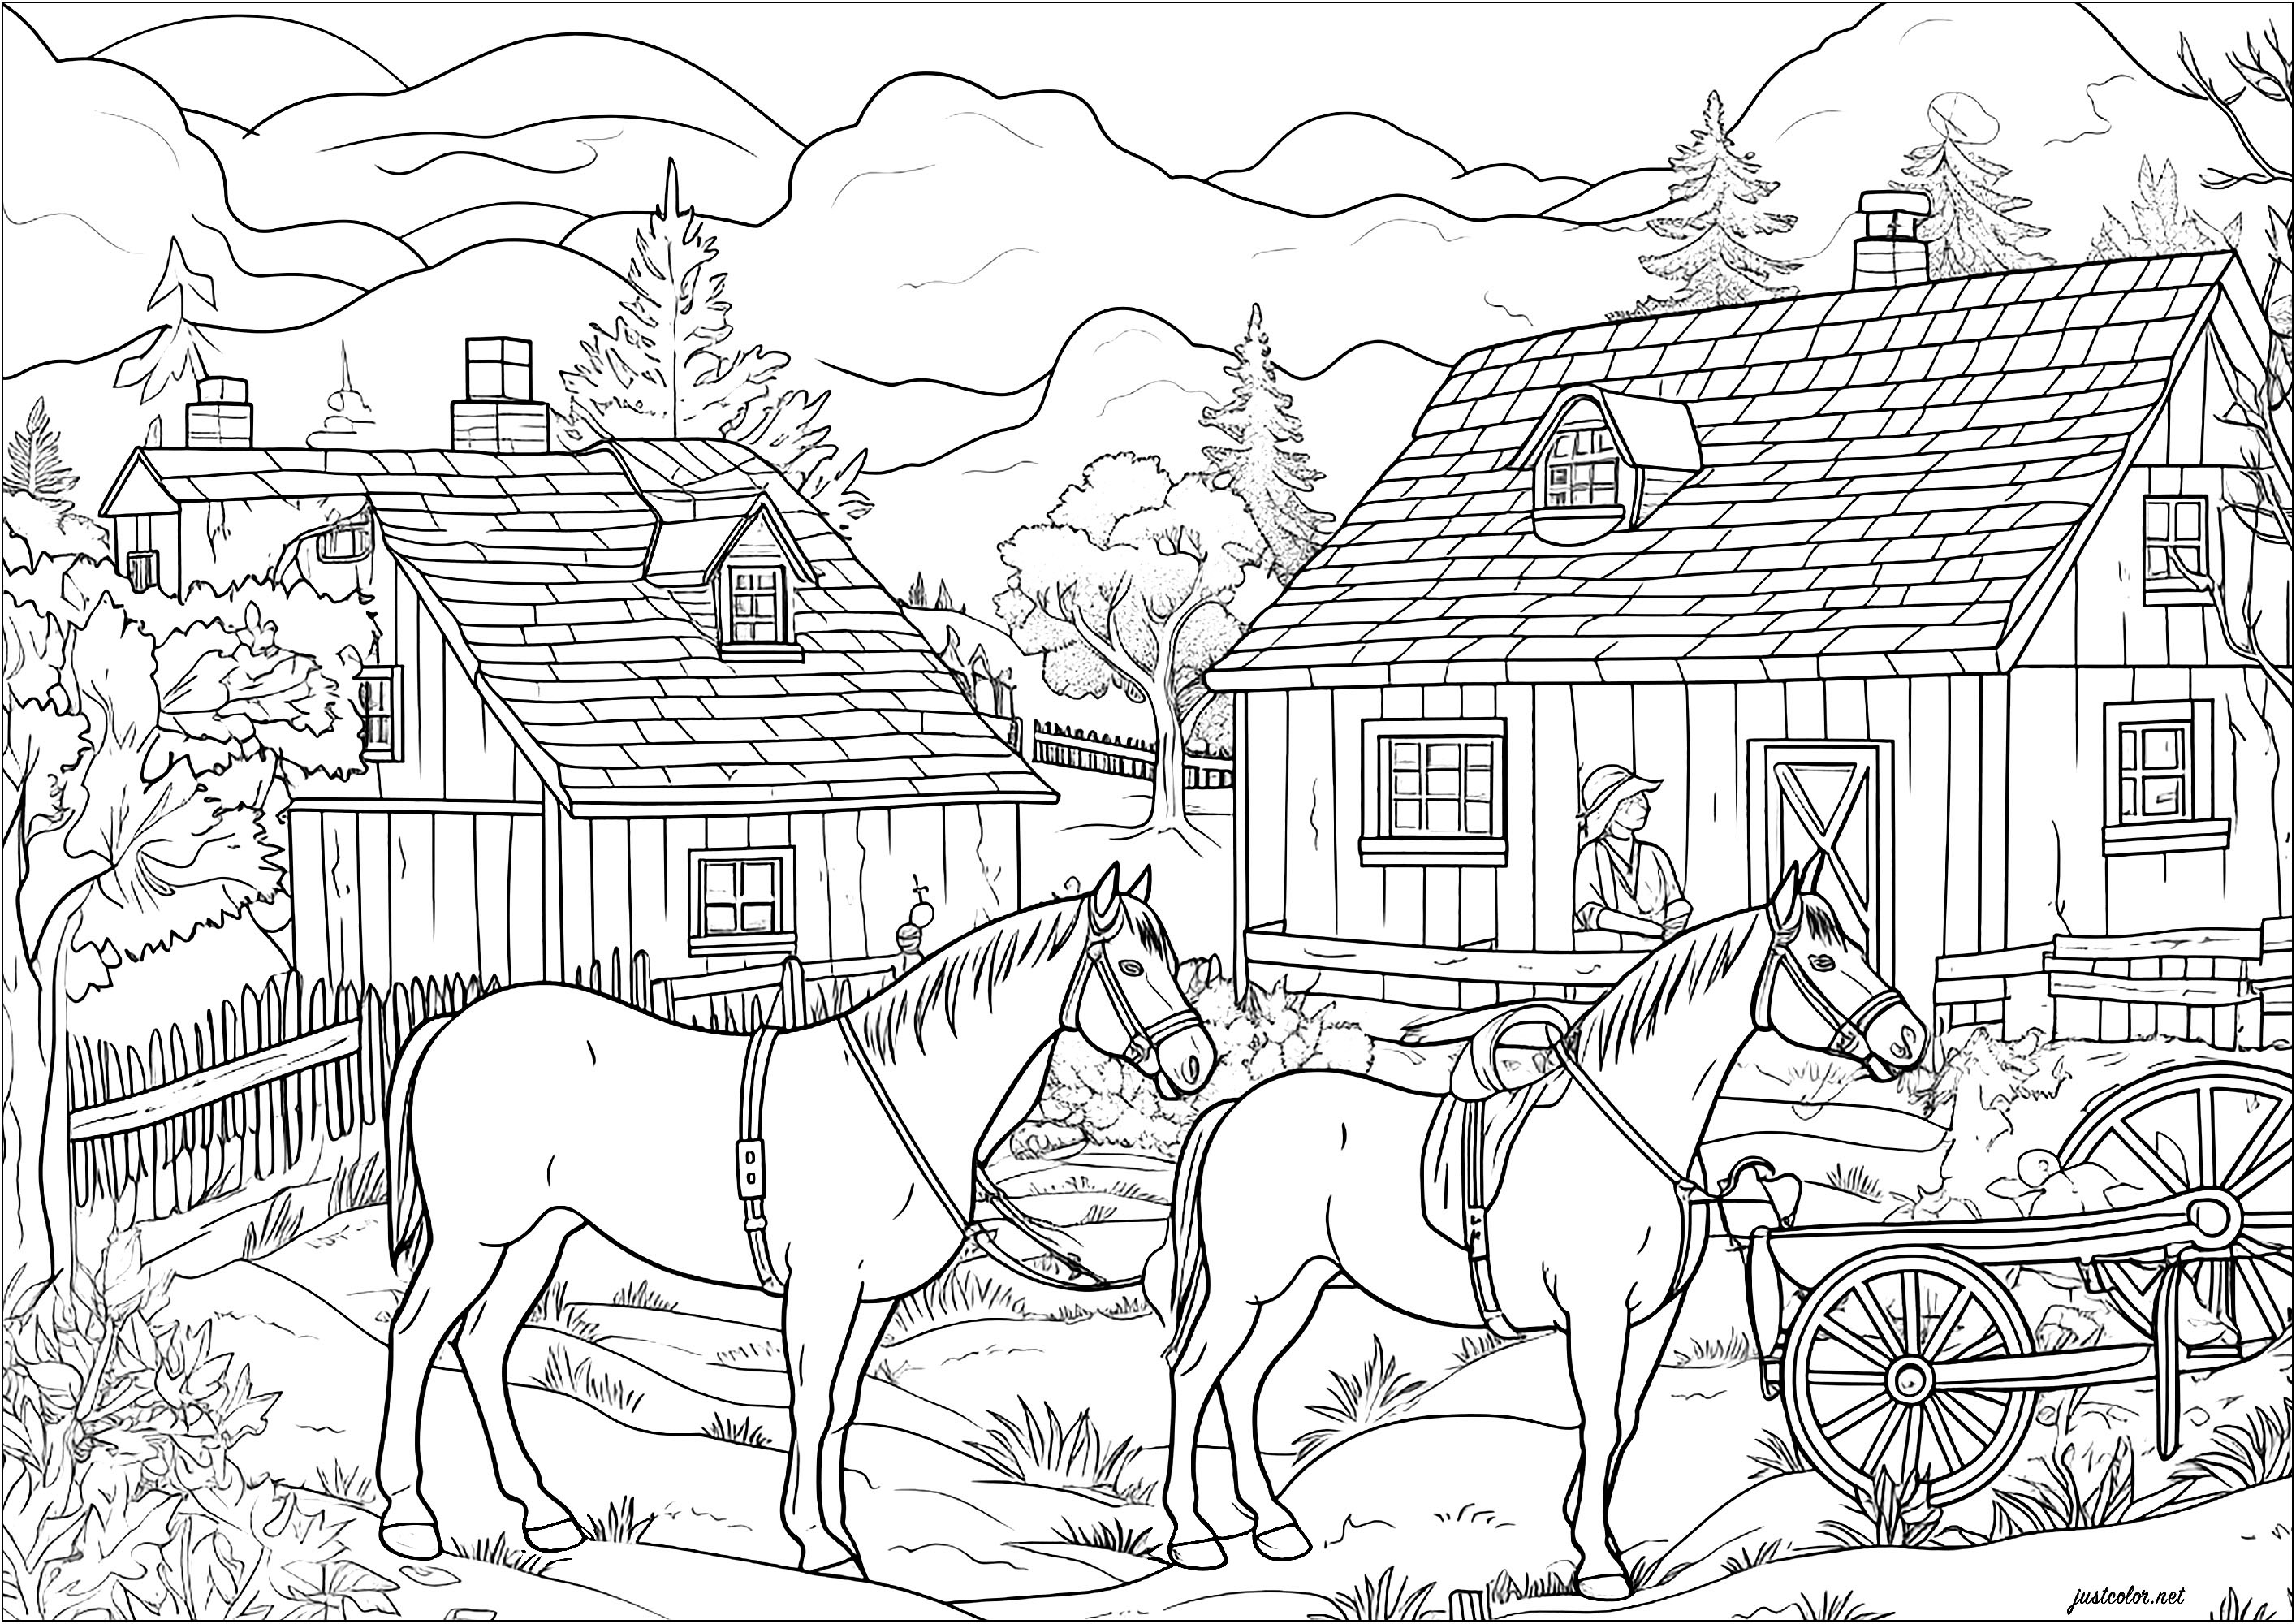 Deux chevaux dans une ferme. Un coloriage plein de détails